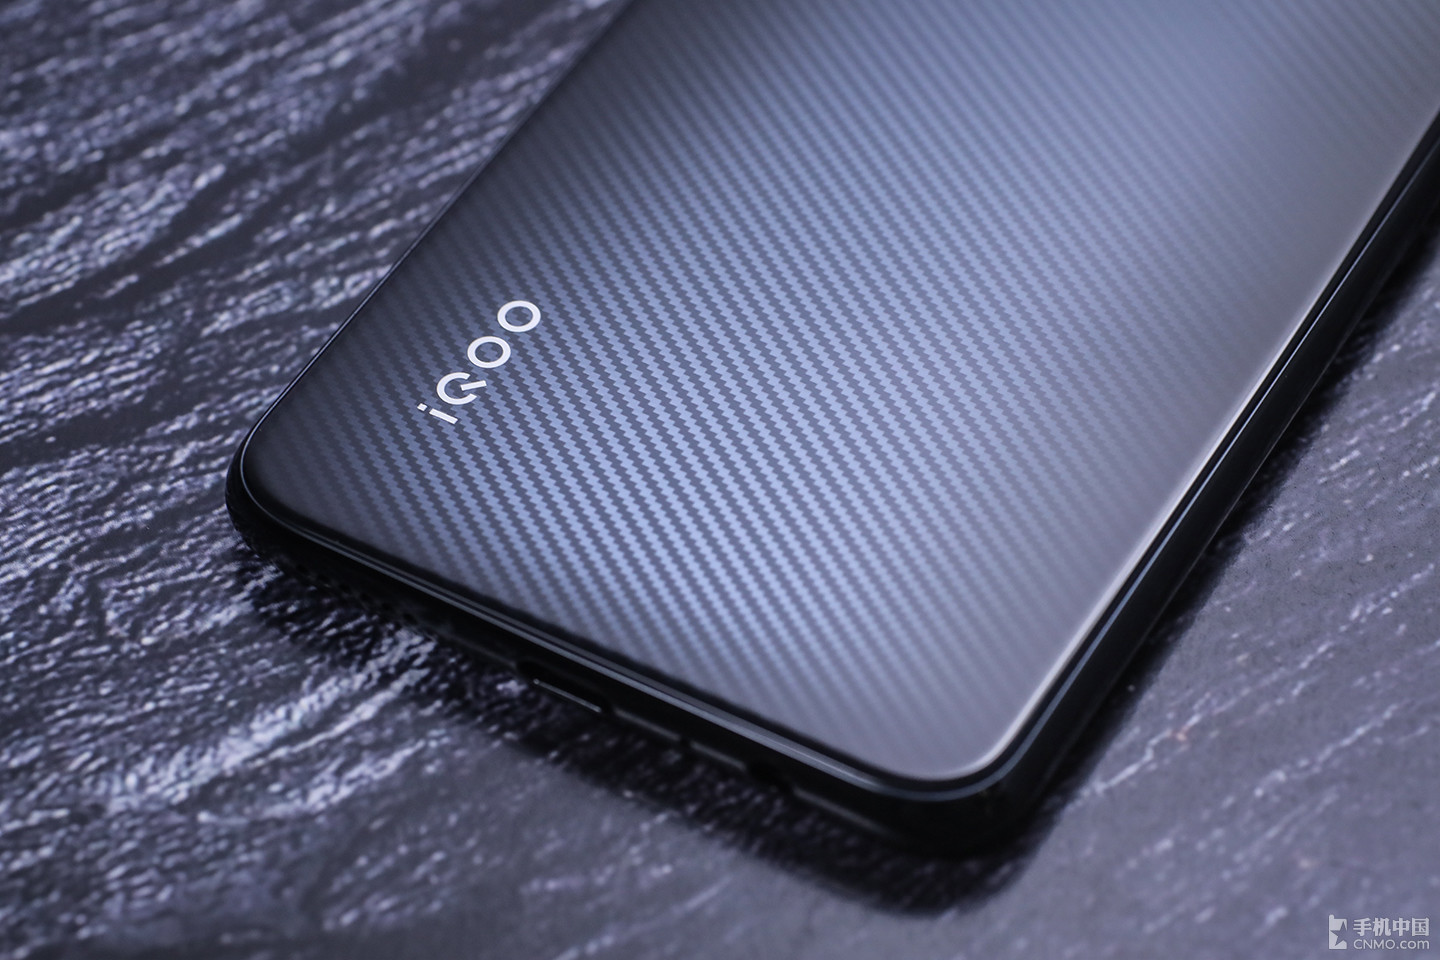 Vivo ra mắt gaming phone  IQOO Neo cấu hình
khủng, giá rẻ: Snapdragon 845, RAM từ 6GB, pin 4500mAh, sạc
nhanh 22.5W